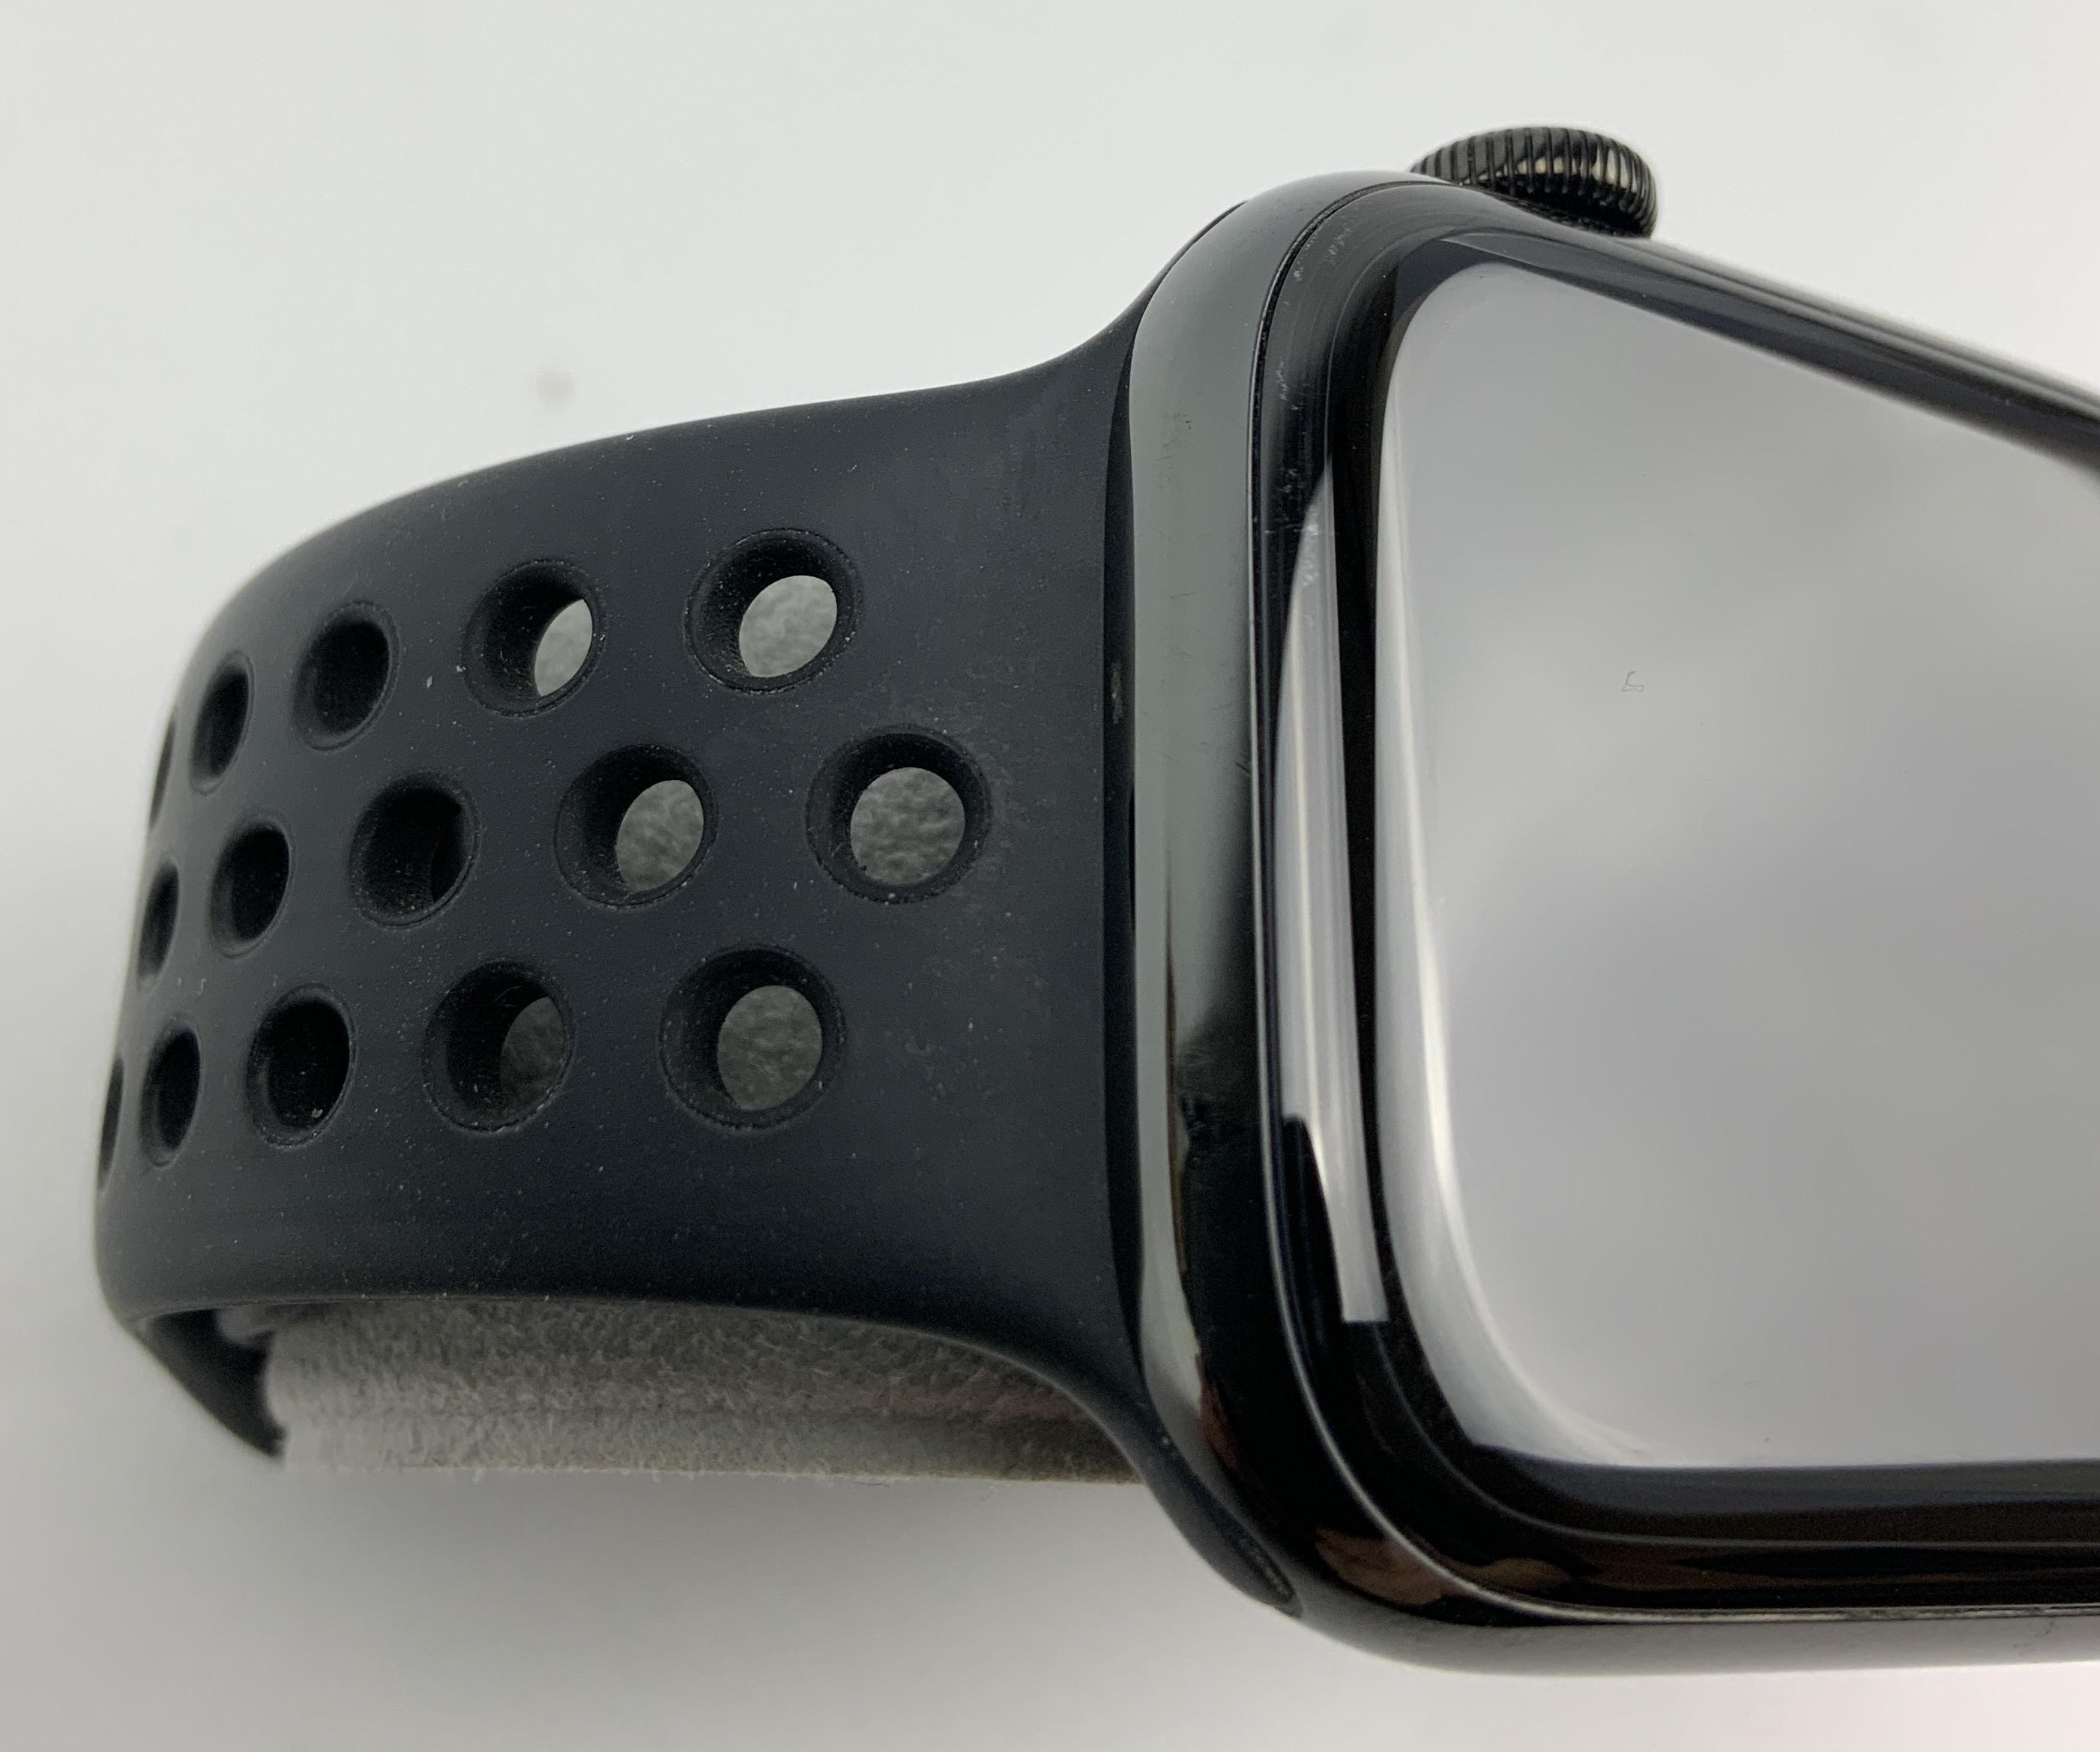 Watch Series 5 Steel Cellular (44mm), Space Black, Afbeelding 2